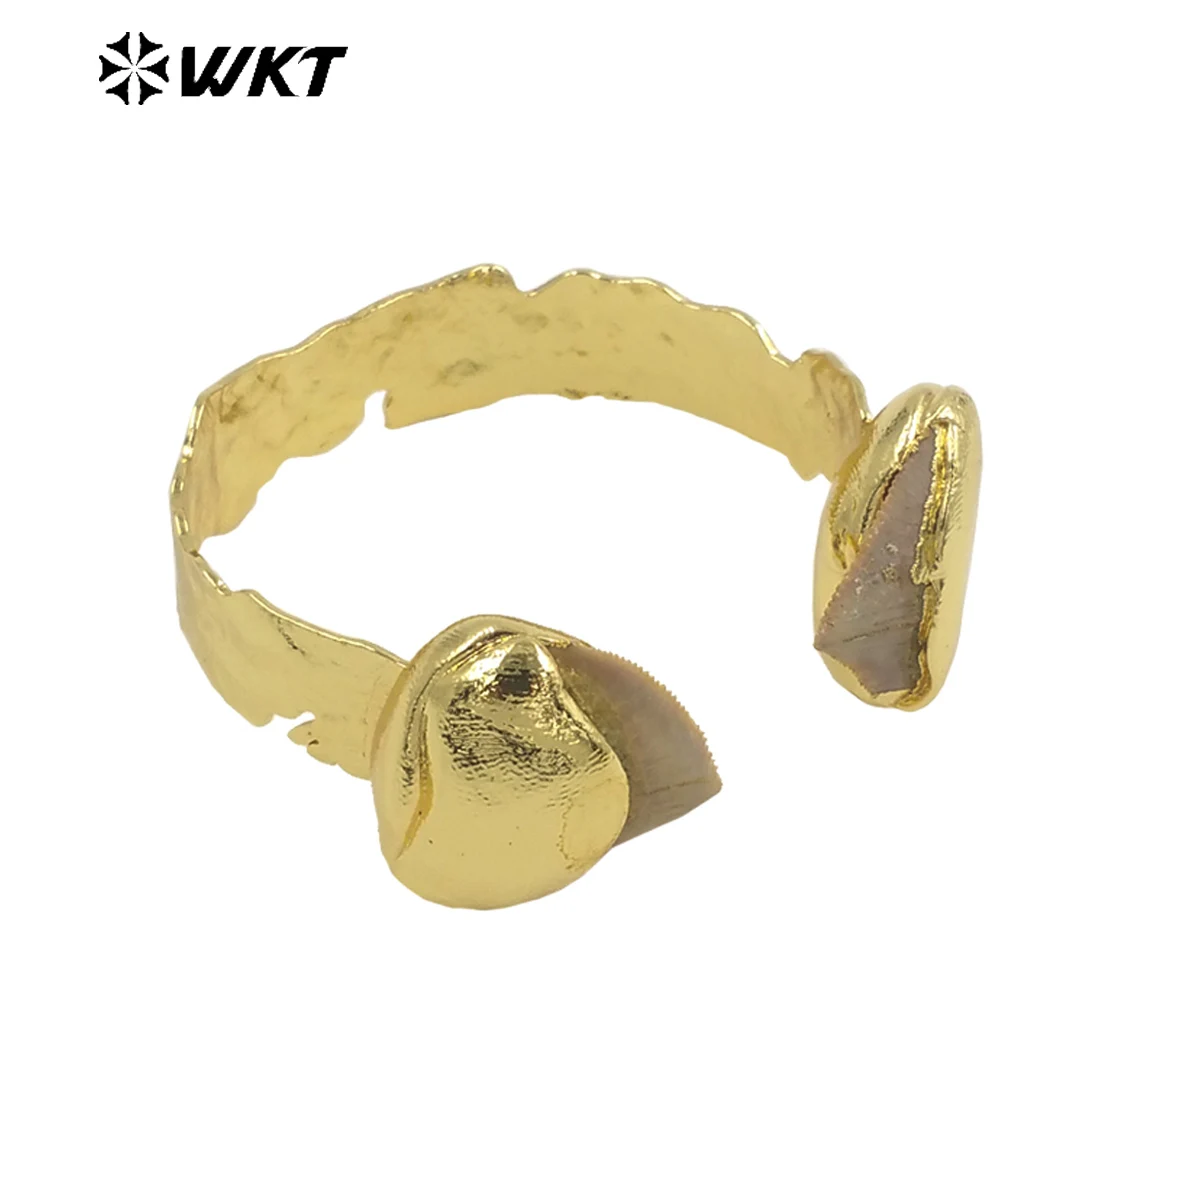 WT-B635 Удивительный WKT Эксклюзивный образец зубного браслета 18k с покрытием из настоящего золота INS, женский браслет в модном стиле, регулируемый Изображение 0